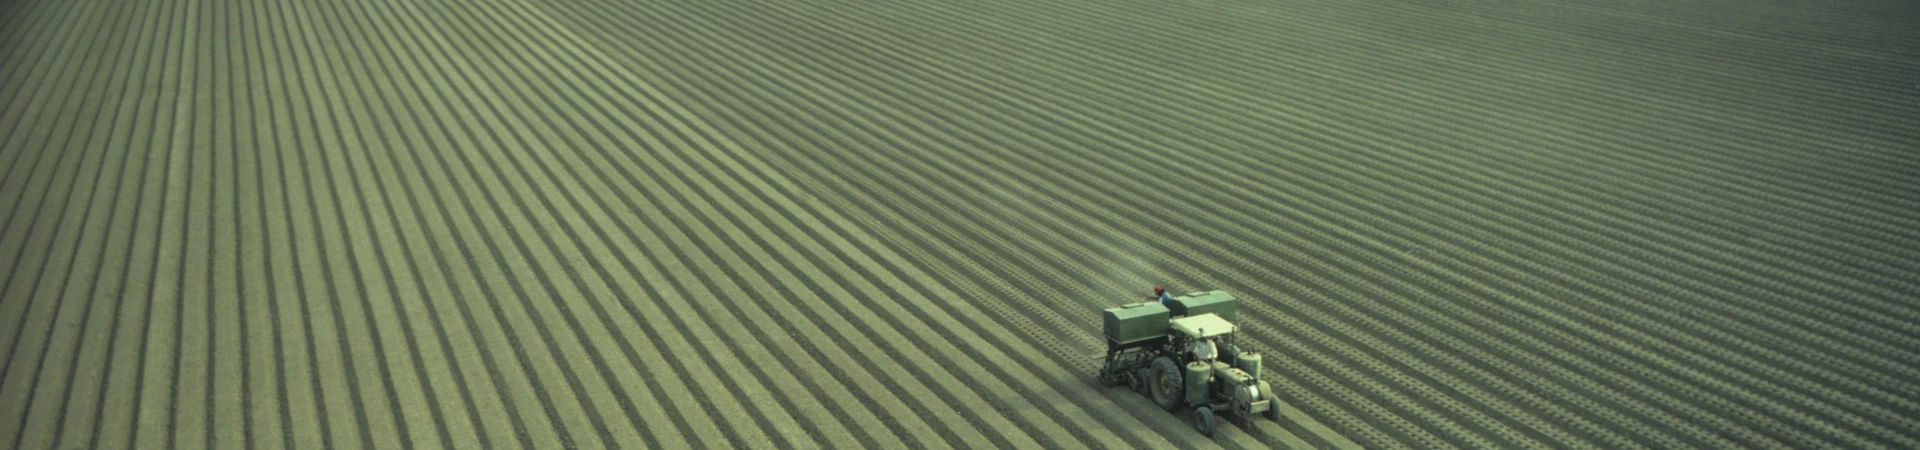 Maszyna rolnicza na polu